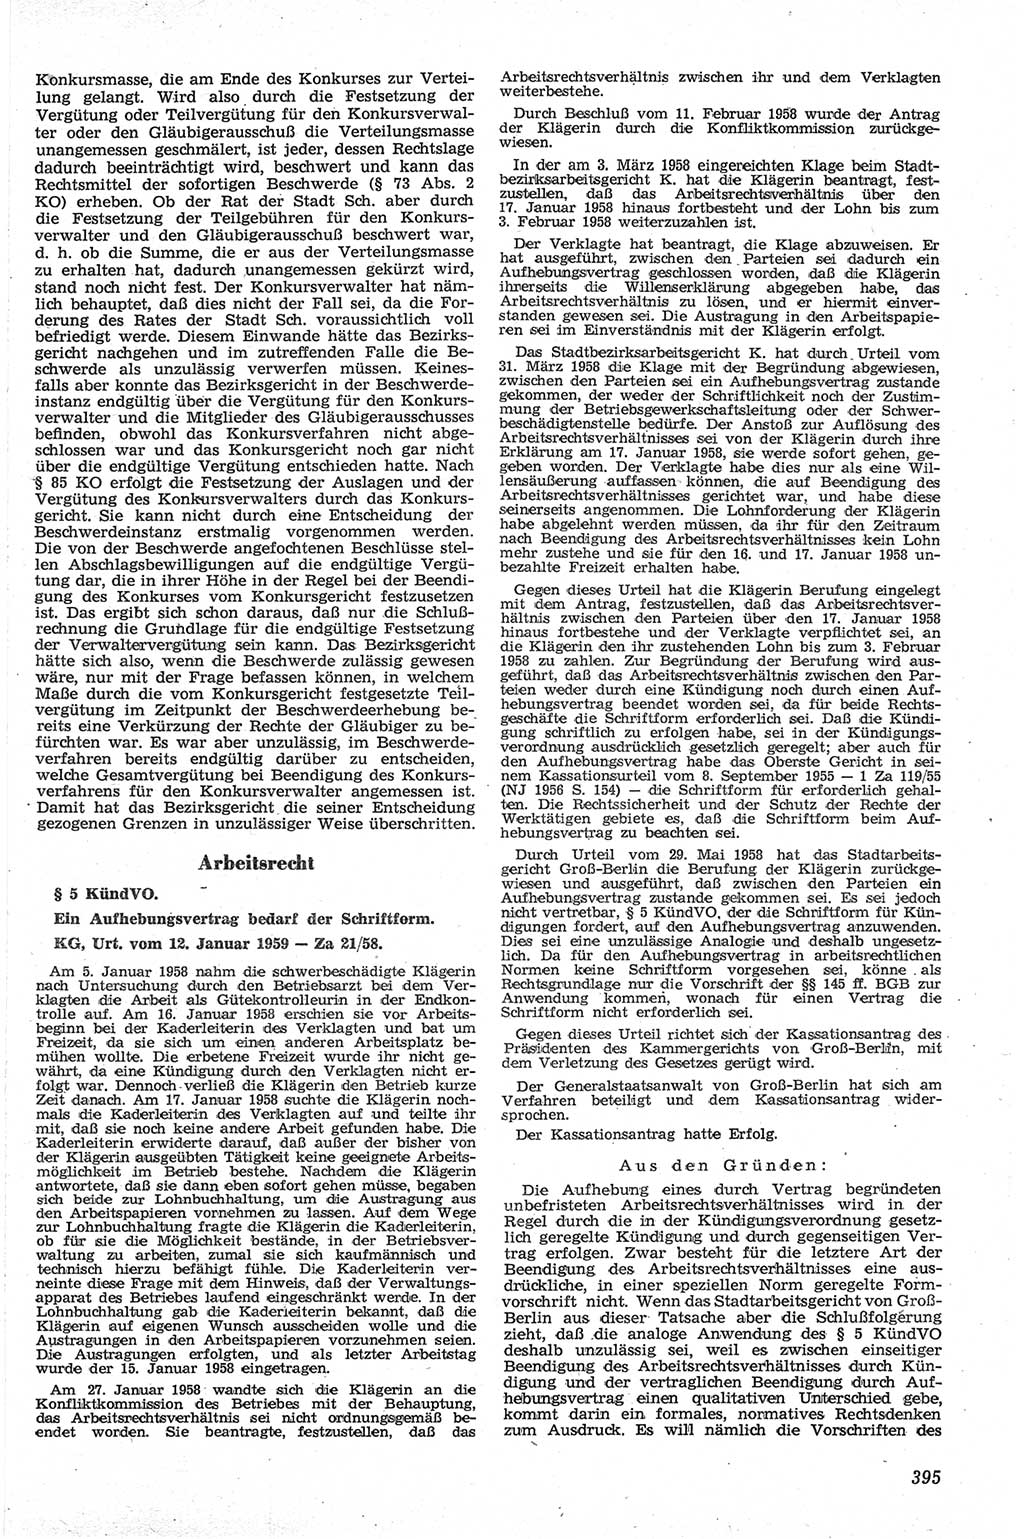 Neue Justiz (NJ), Zeitschrift für Recht und Rechtswissenschaft [Deutsche Demokratische Republik (DDR)], 13. Jahrgang 1959, Seite 395 (NJ DDR 1959, S. 395)